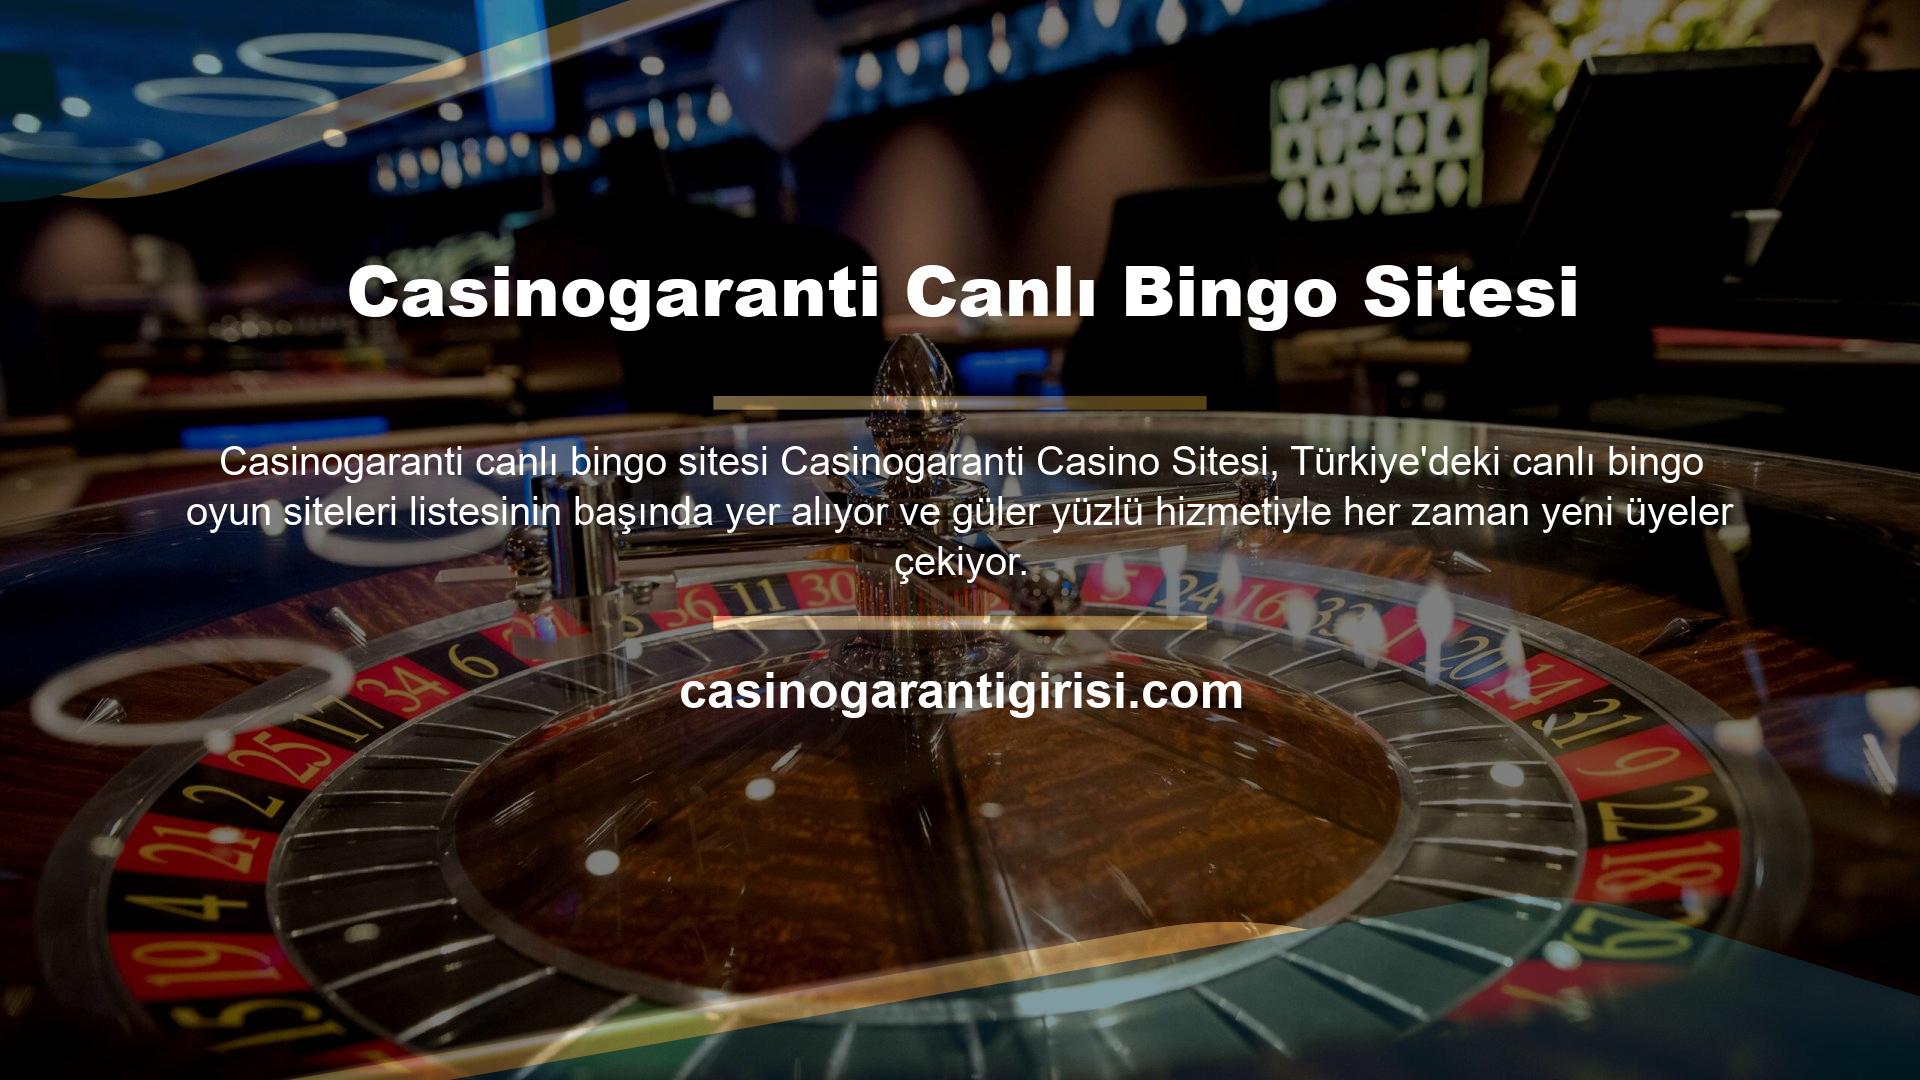 Casinogaranti ana sayfasının Canlı Bingo bölümüne tıklayın ve Beyaz, Siyah, Gümüş ve Platinum adlı dört canlı bingo tablosu göreceksiniz